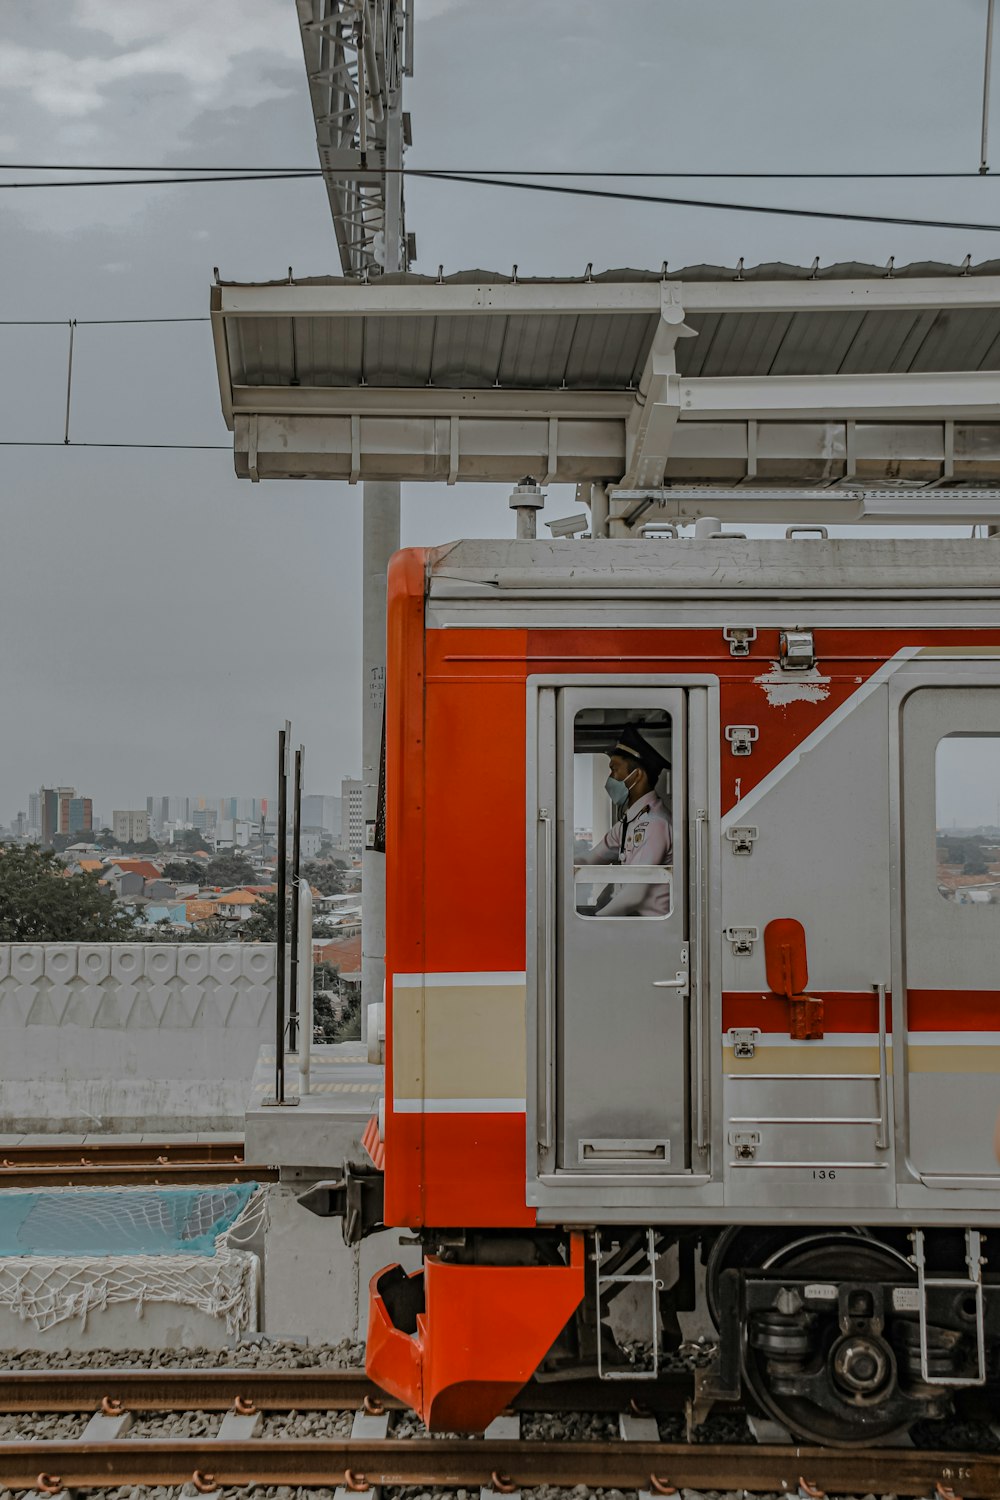 un train rouge et blanc circulant sur les voies ferrées